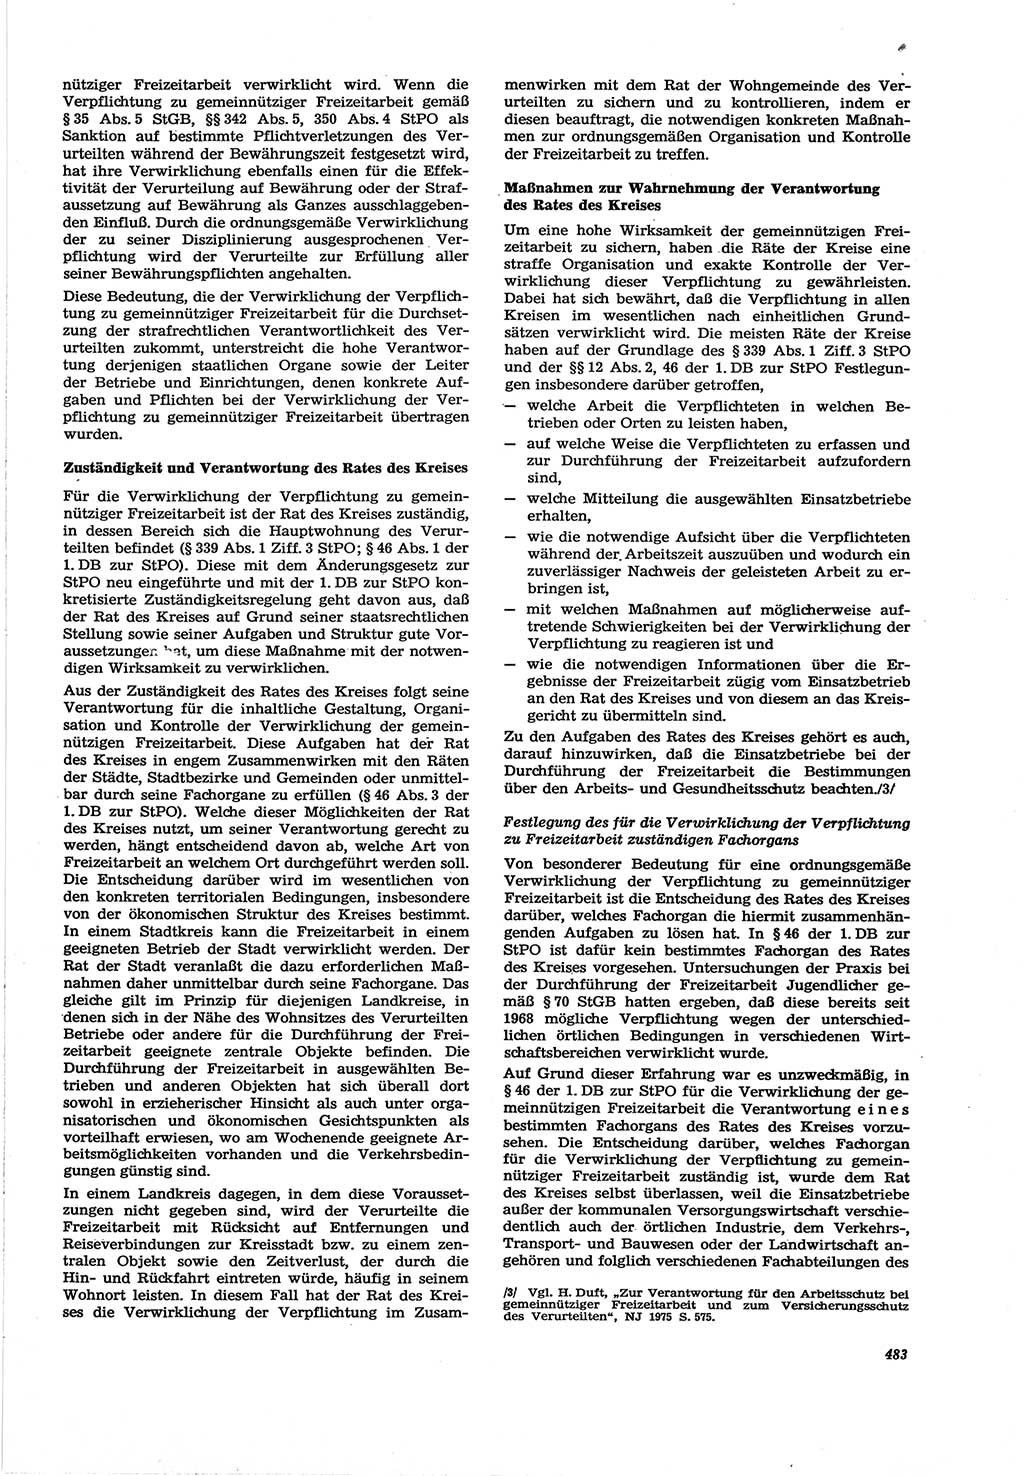 Neue Justiz (NJ), Zeitschrift für Recht und Rechtswissenschaft [Deutsche Demokratische Republik (DDR)], 30. Jahrgang 1976, Seite 483 (NJ DDR 1976, S. 483)